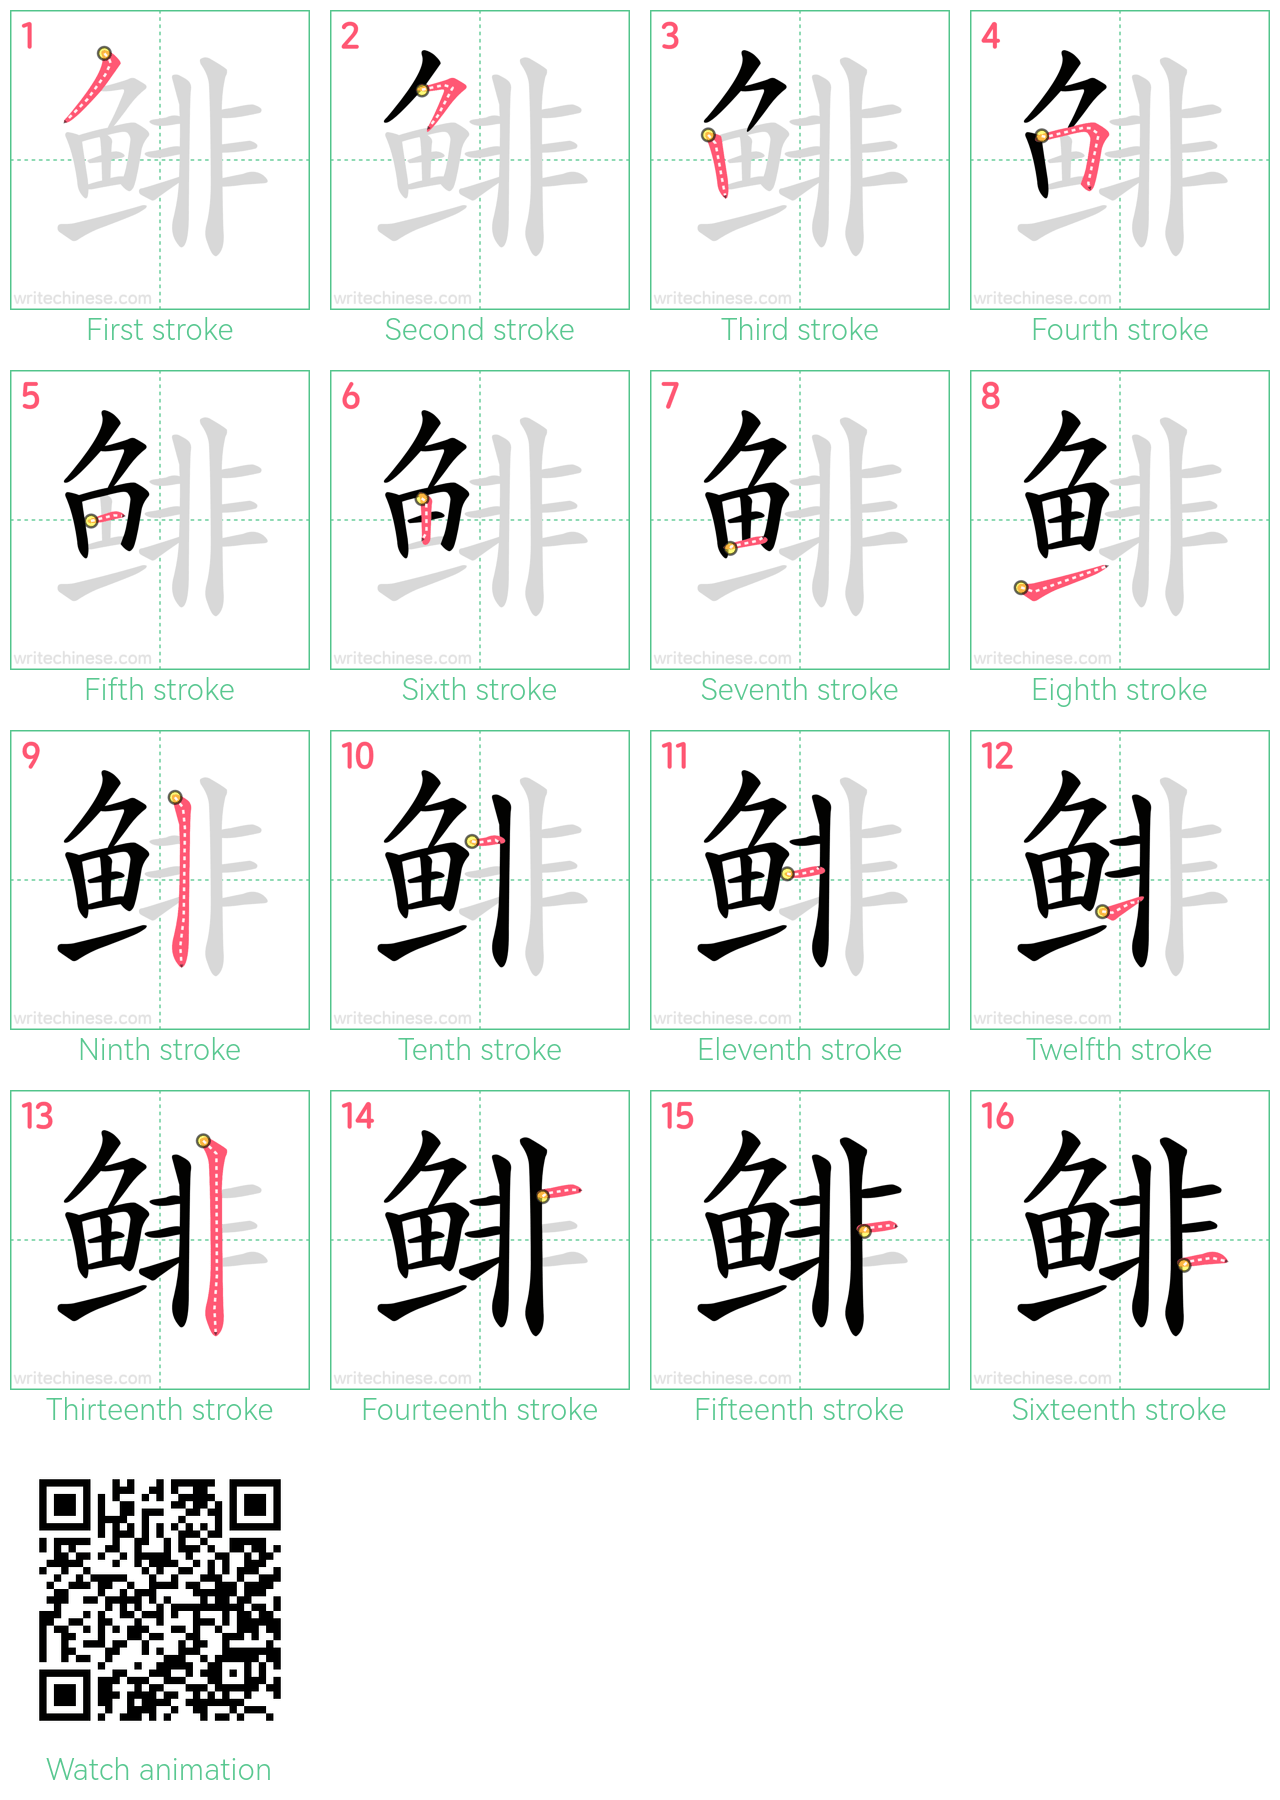 鲱 step-by-step stroke order diagrams